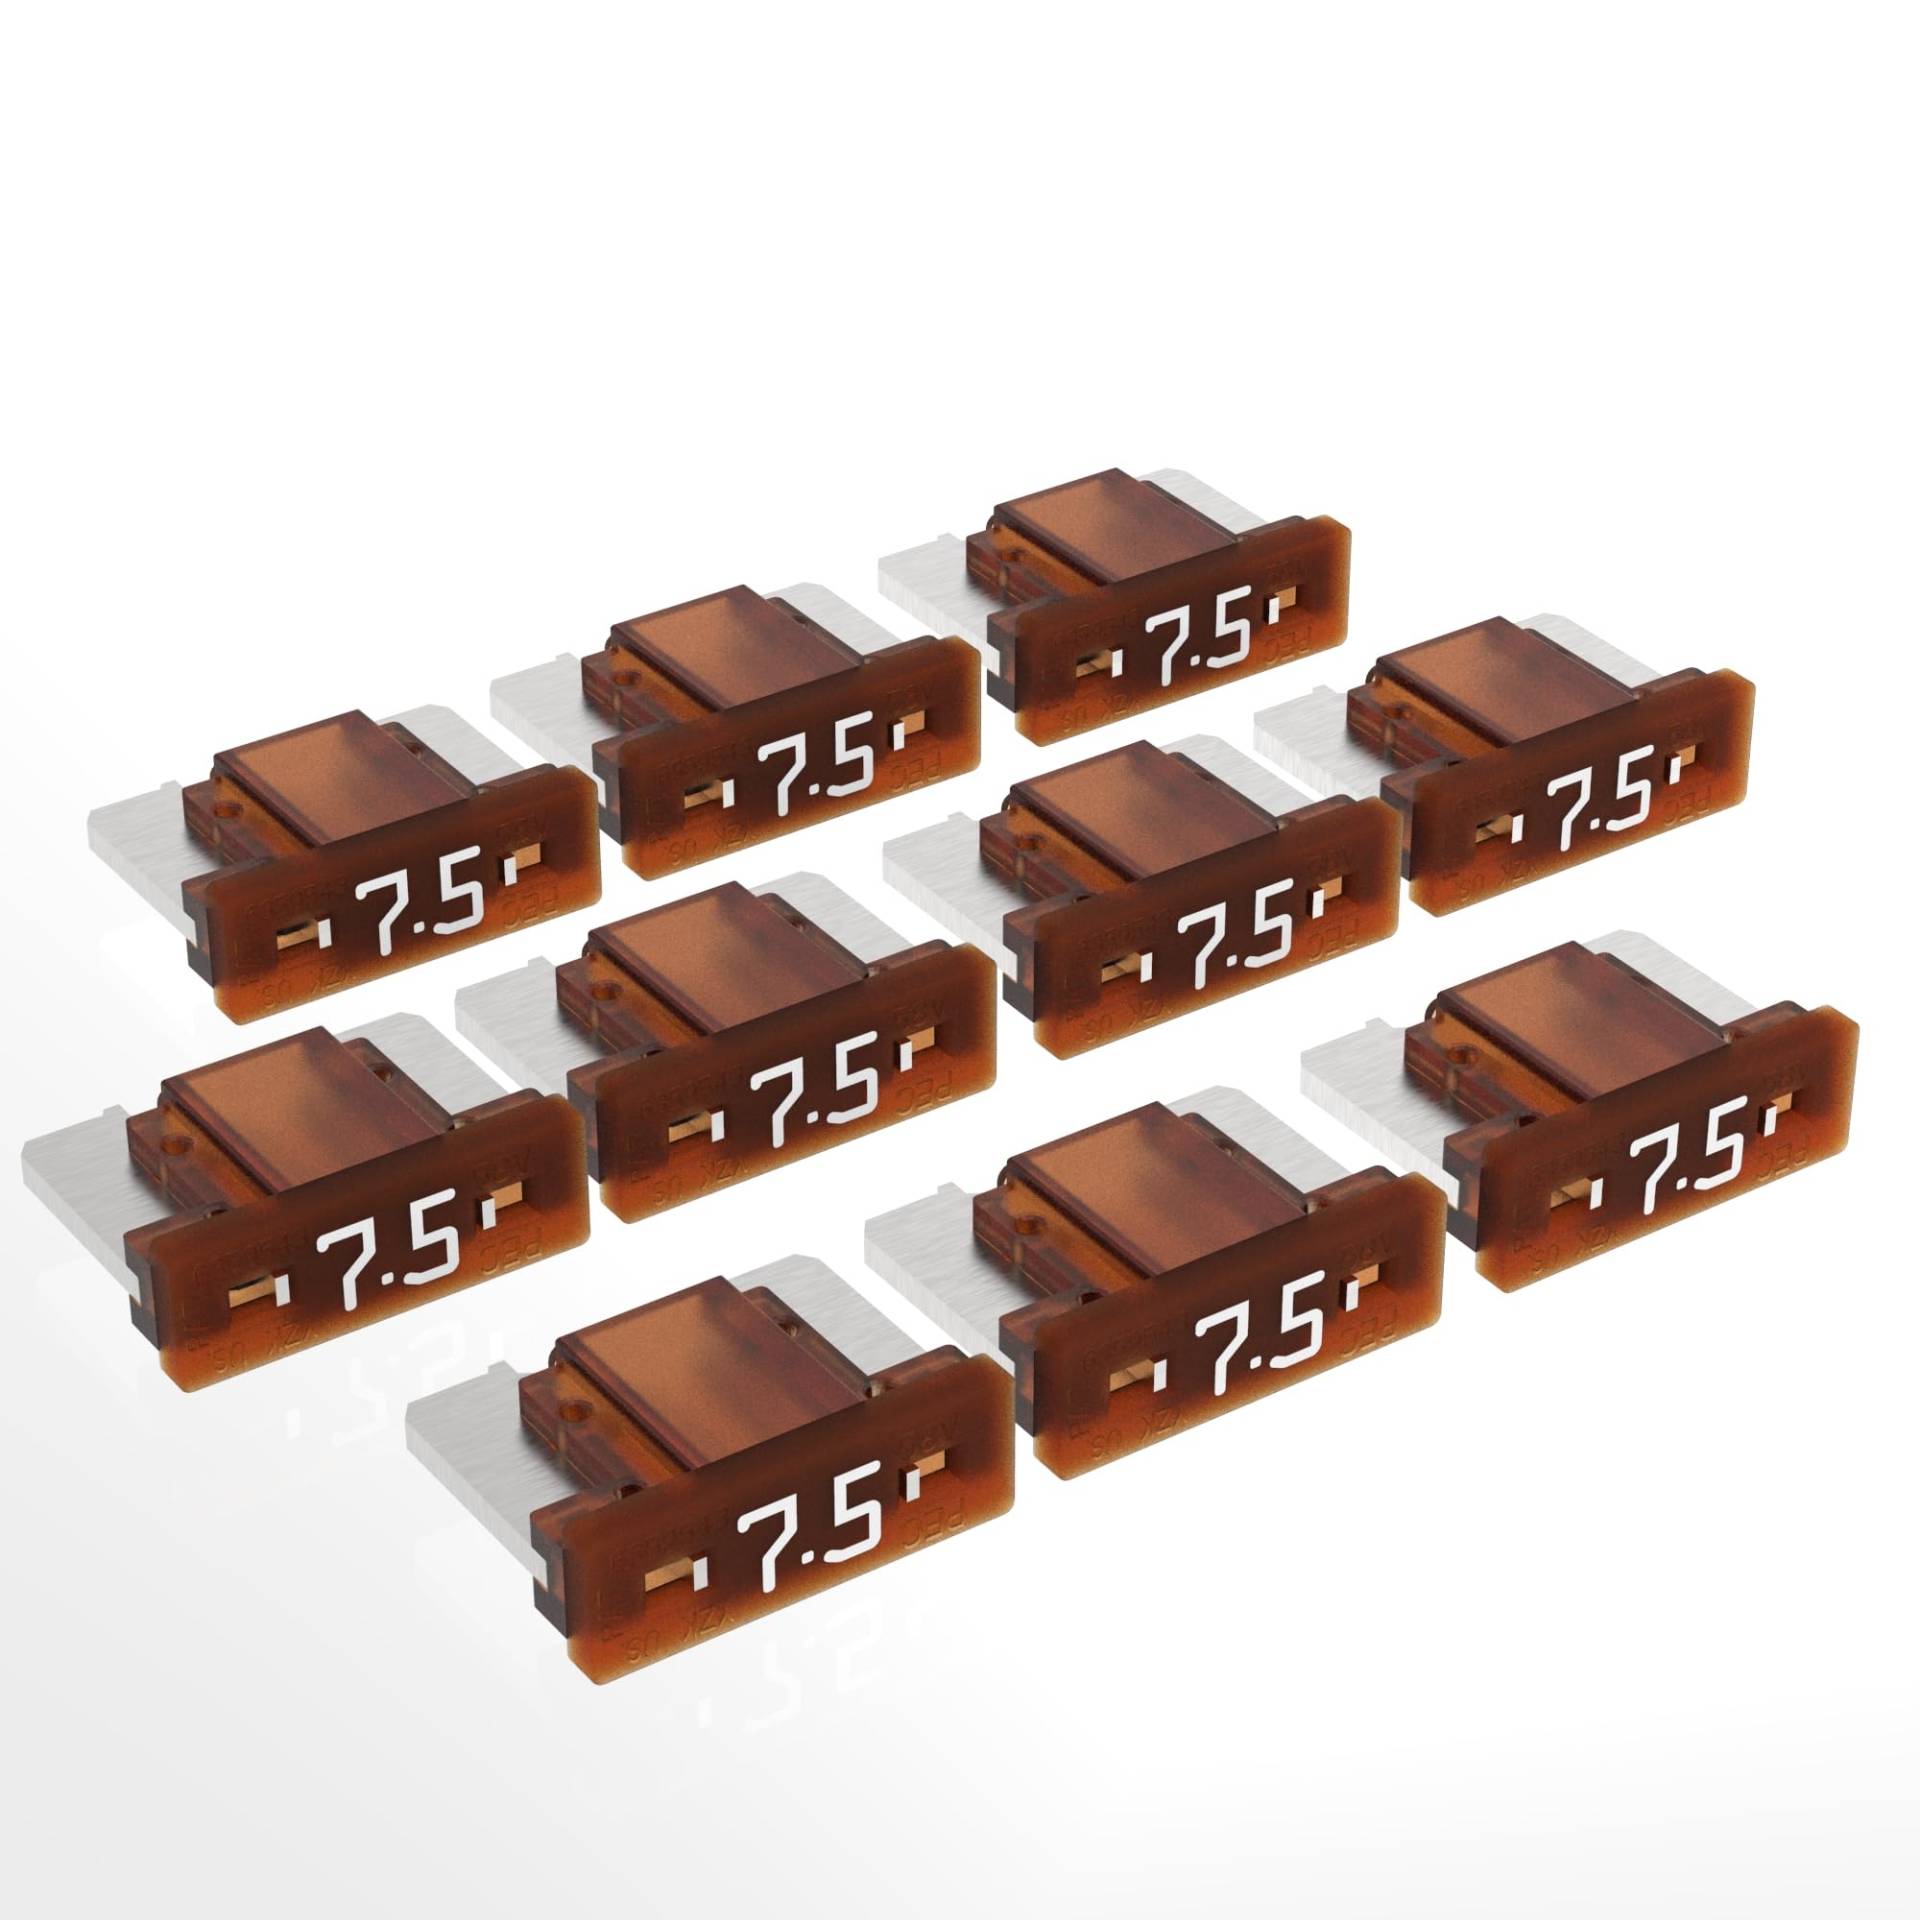 AUPROTEC Mini LP Kfz Sicherungen Flachstecksicherungen 2A - 30A Auswahl: 7,5A Ampere braun, 10 Stück von AUPROTEC